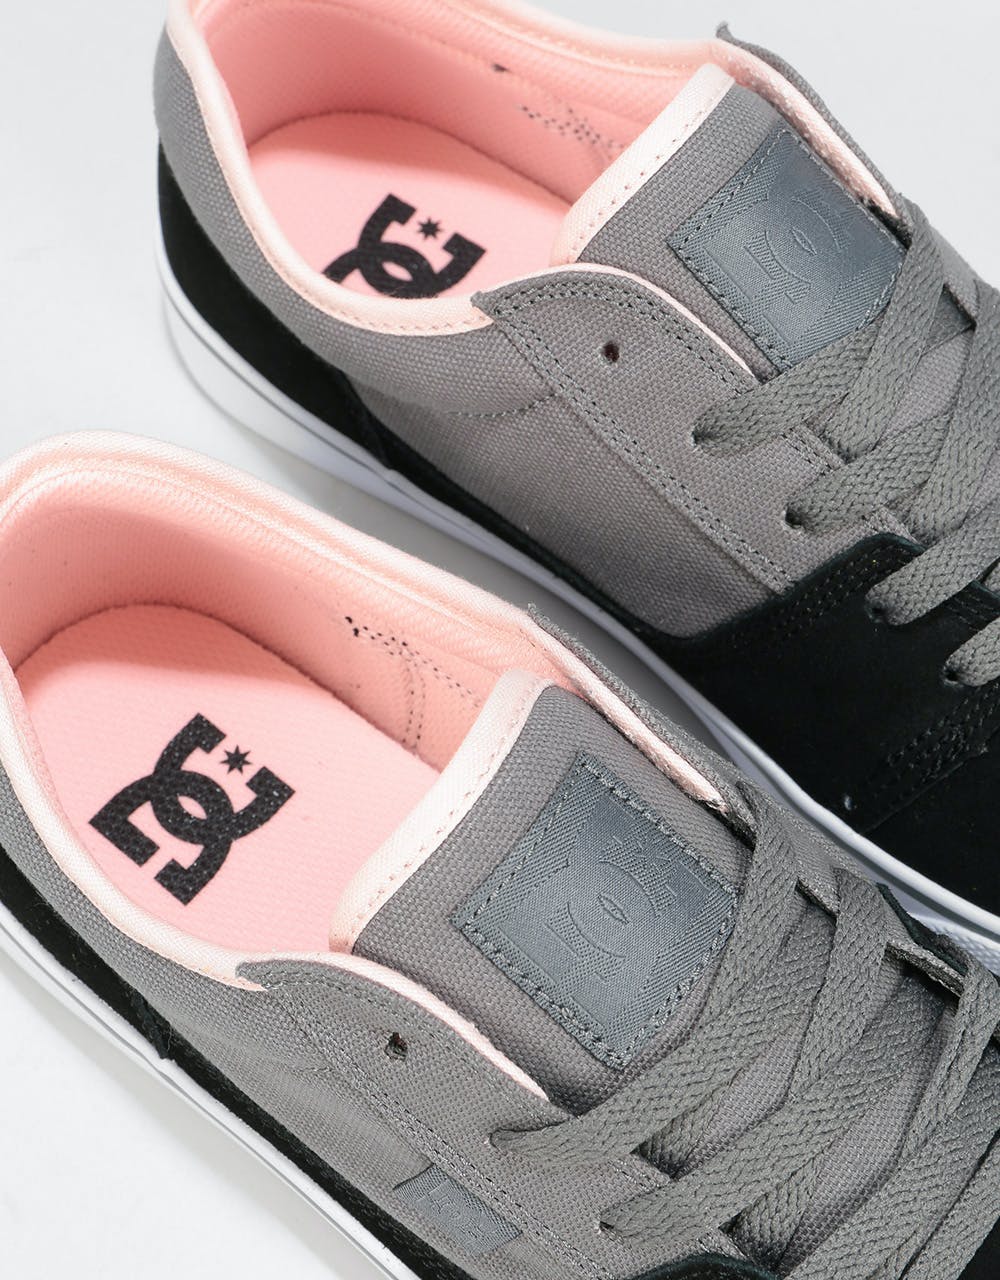 DC Tonik Skate Shoes - Grey/Pink